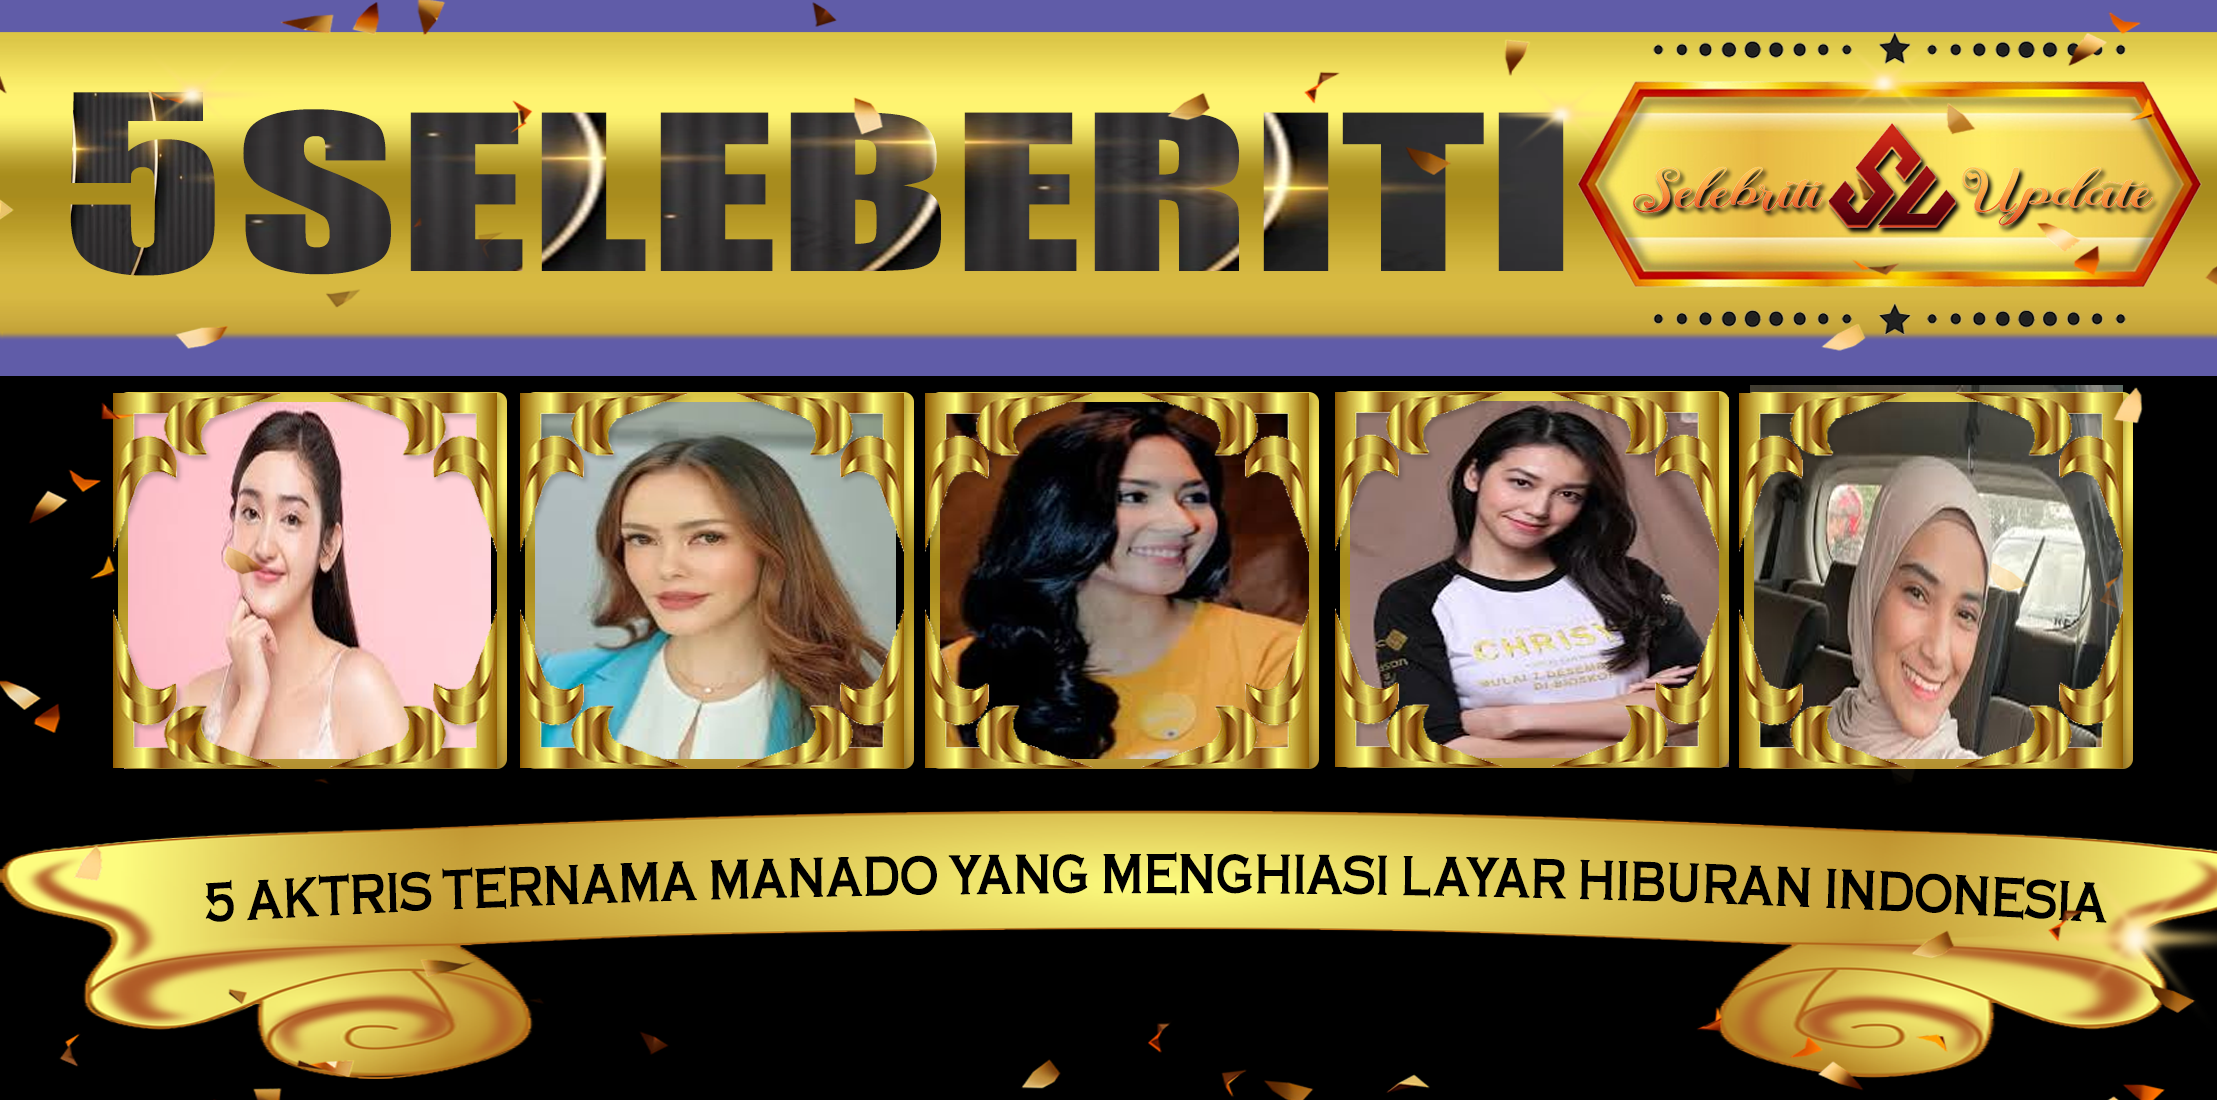 5 Aktris Ternama Manado yang Menghiasi Layar Hiburan Indonesia